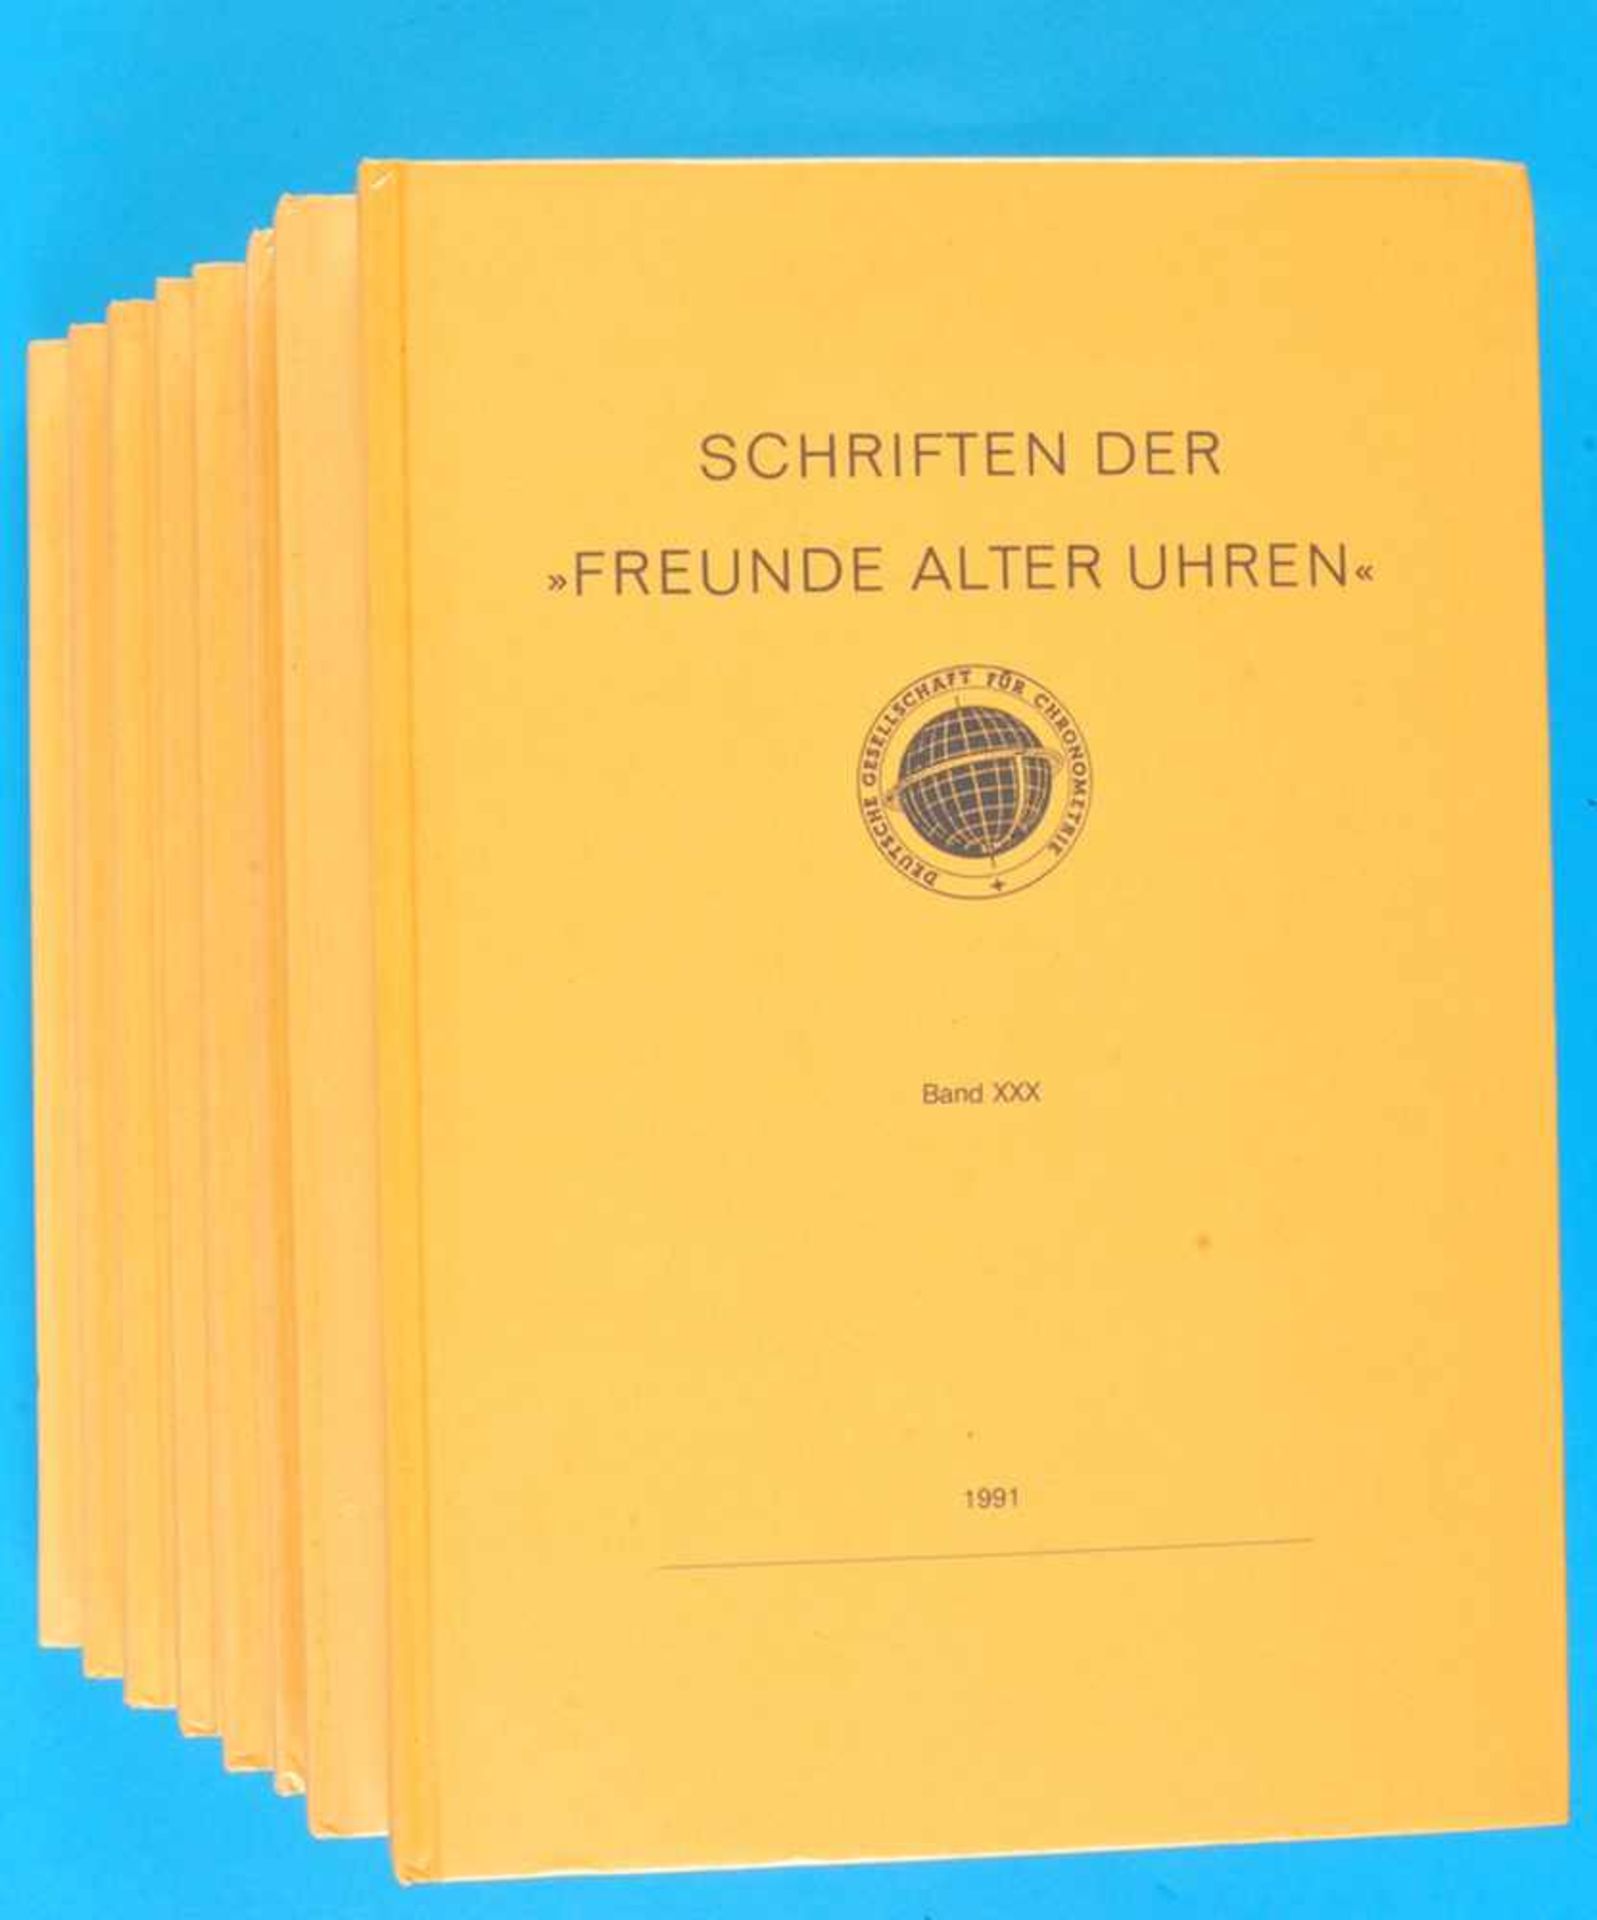 5 Jahresschriften der „Deutschen Gesellschaft für Chronometrie“5 Jahresschriften der „Deutschen